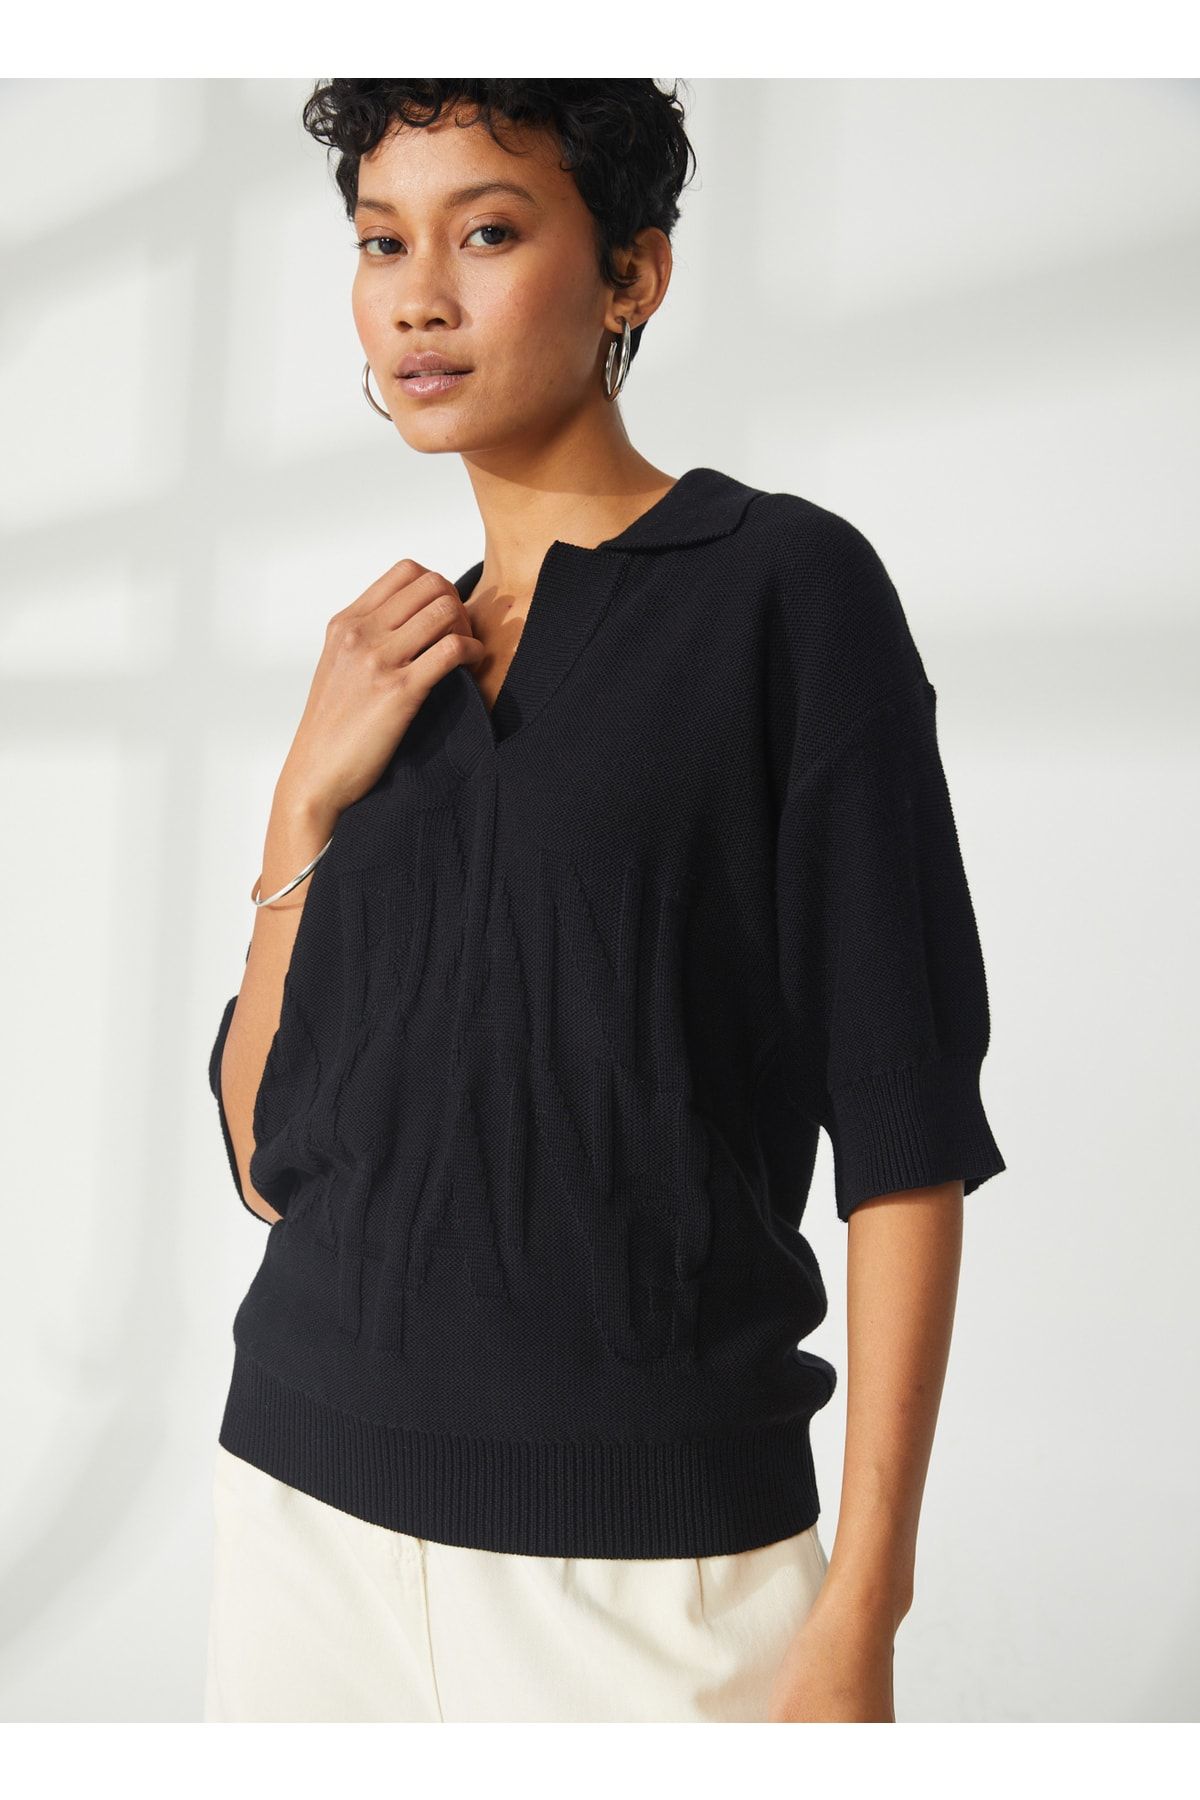 Armani Exchange Polo Yaka Düz Siyah Kadın T-shirt 3rym1e